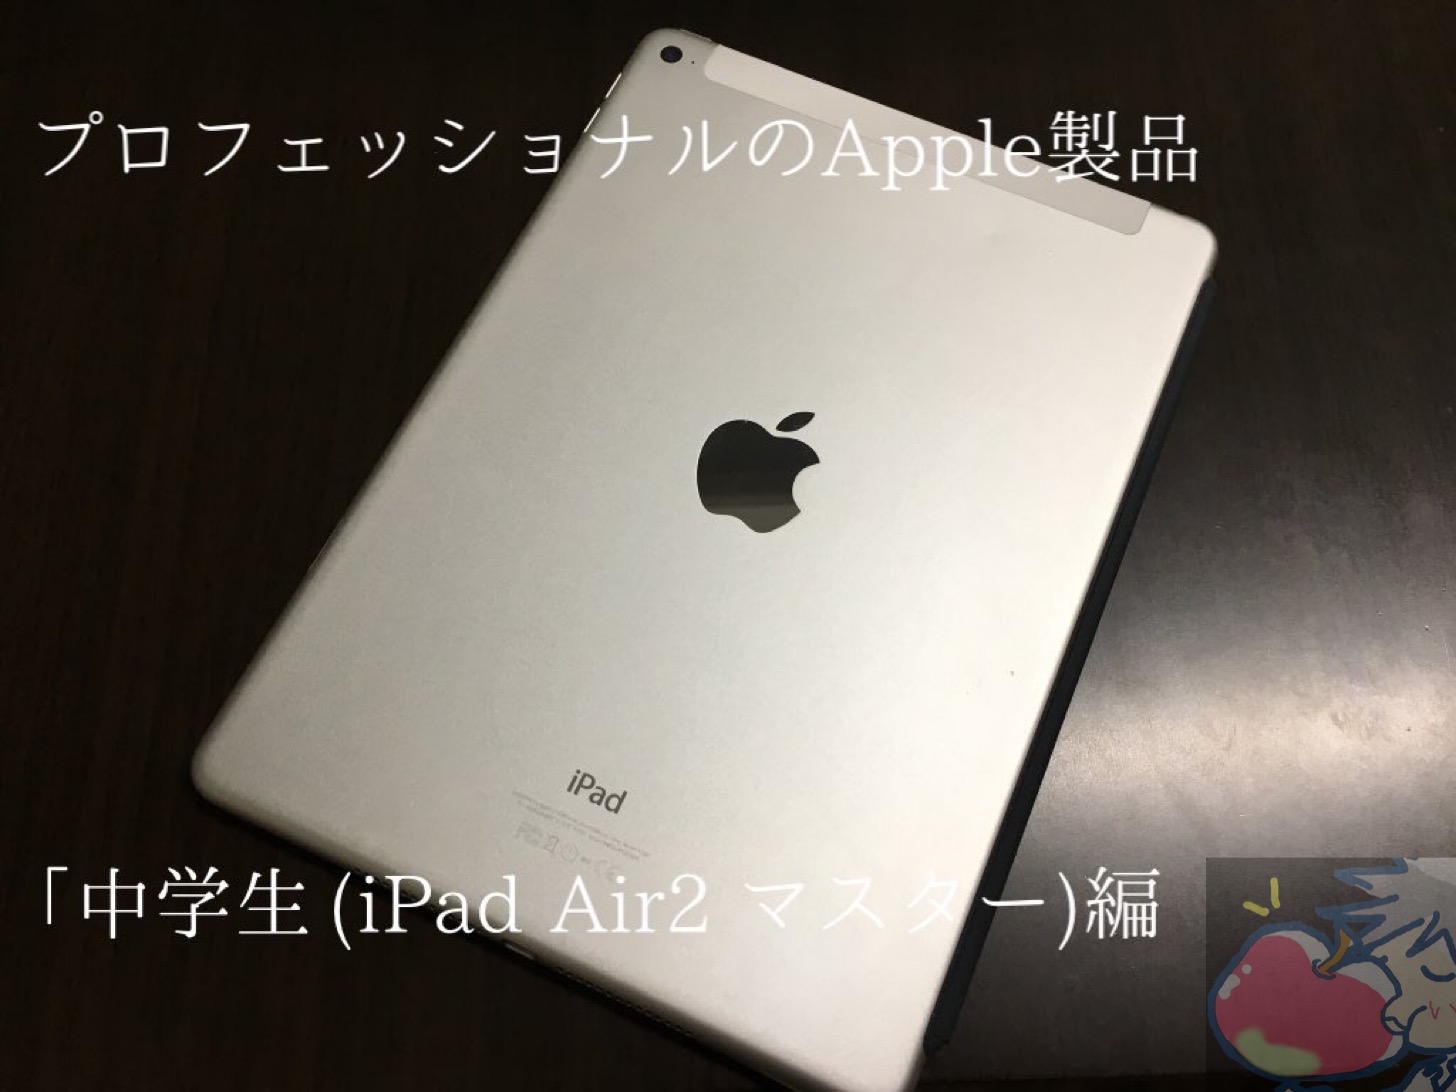 プロフェッショナルのApple製品「中学生(iPad Air 2マスター編)」